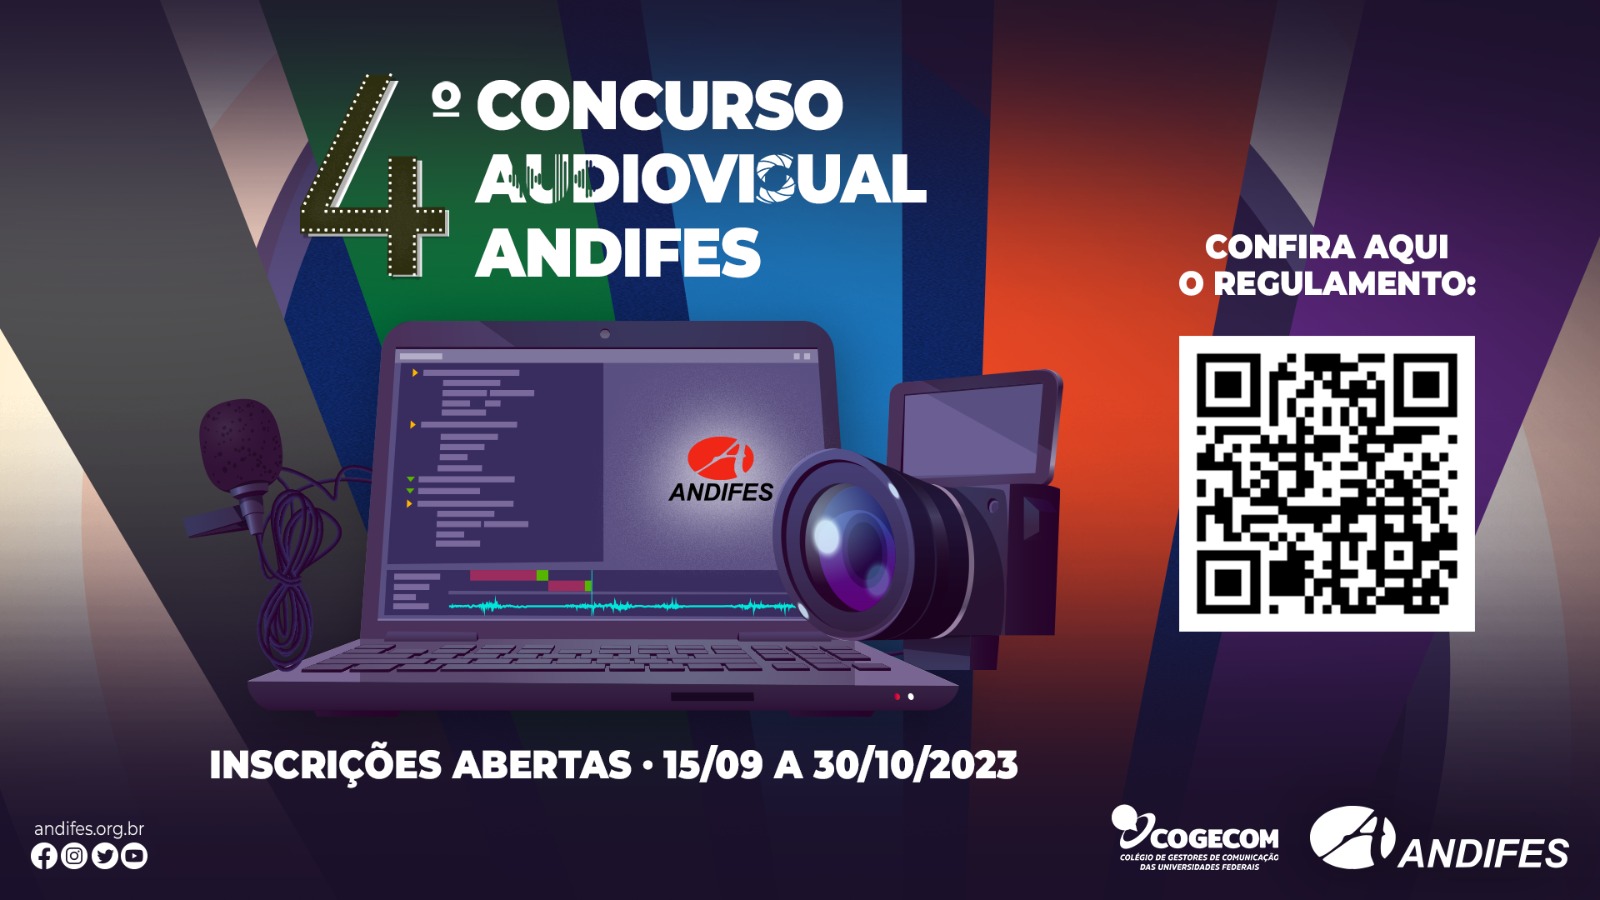 Concurso Audiovisual Andifes